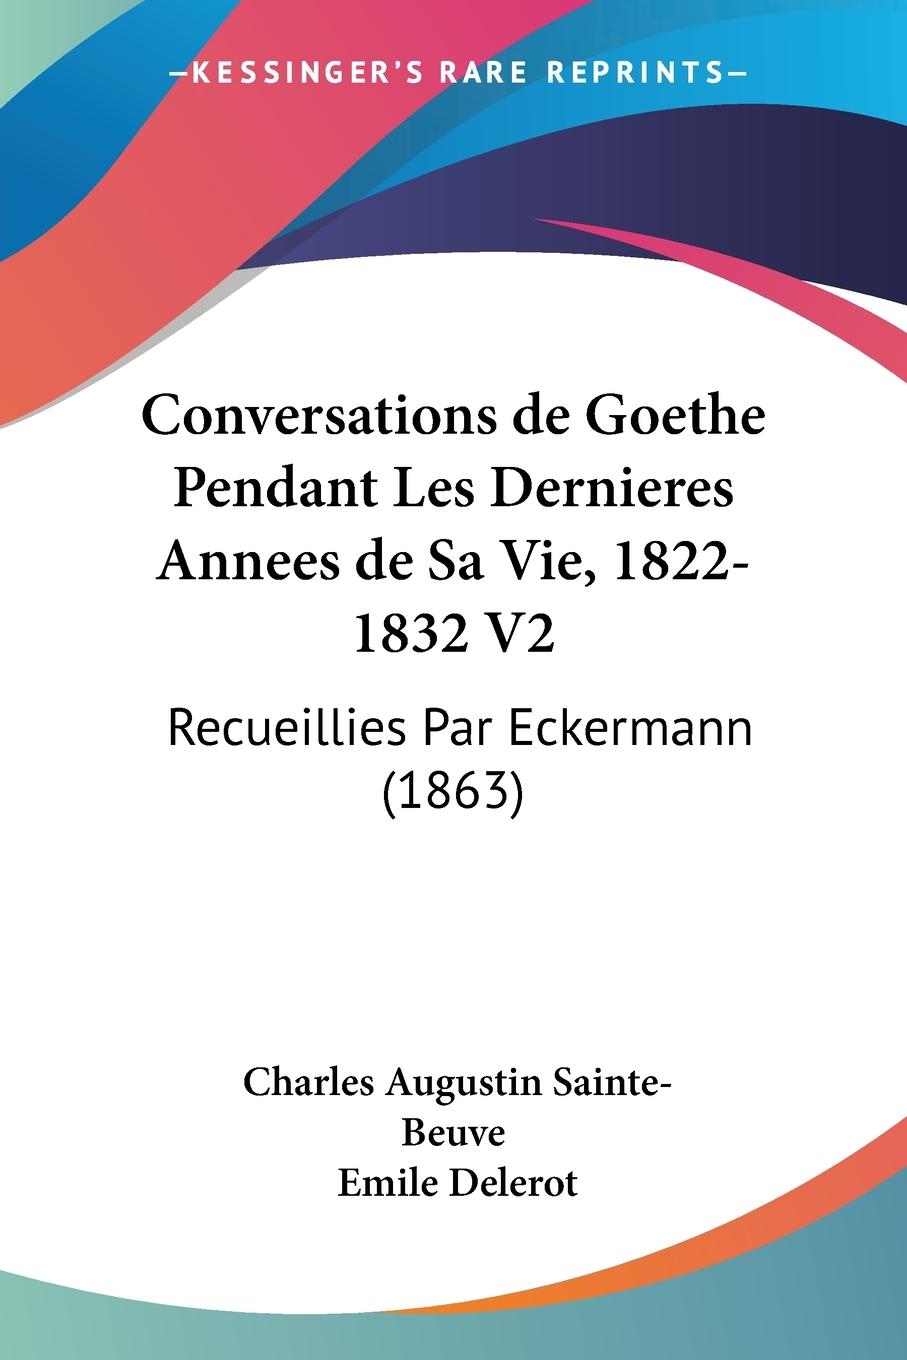 Conversations de Goethe Pendant Les Dernieres Annees de Sa Vie, 1822-1832 V2 - Sainte-Beuve, Charles Augustin Delerot, Emile